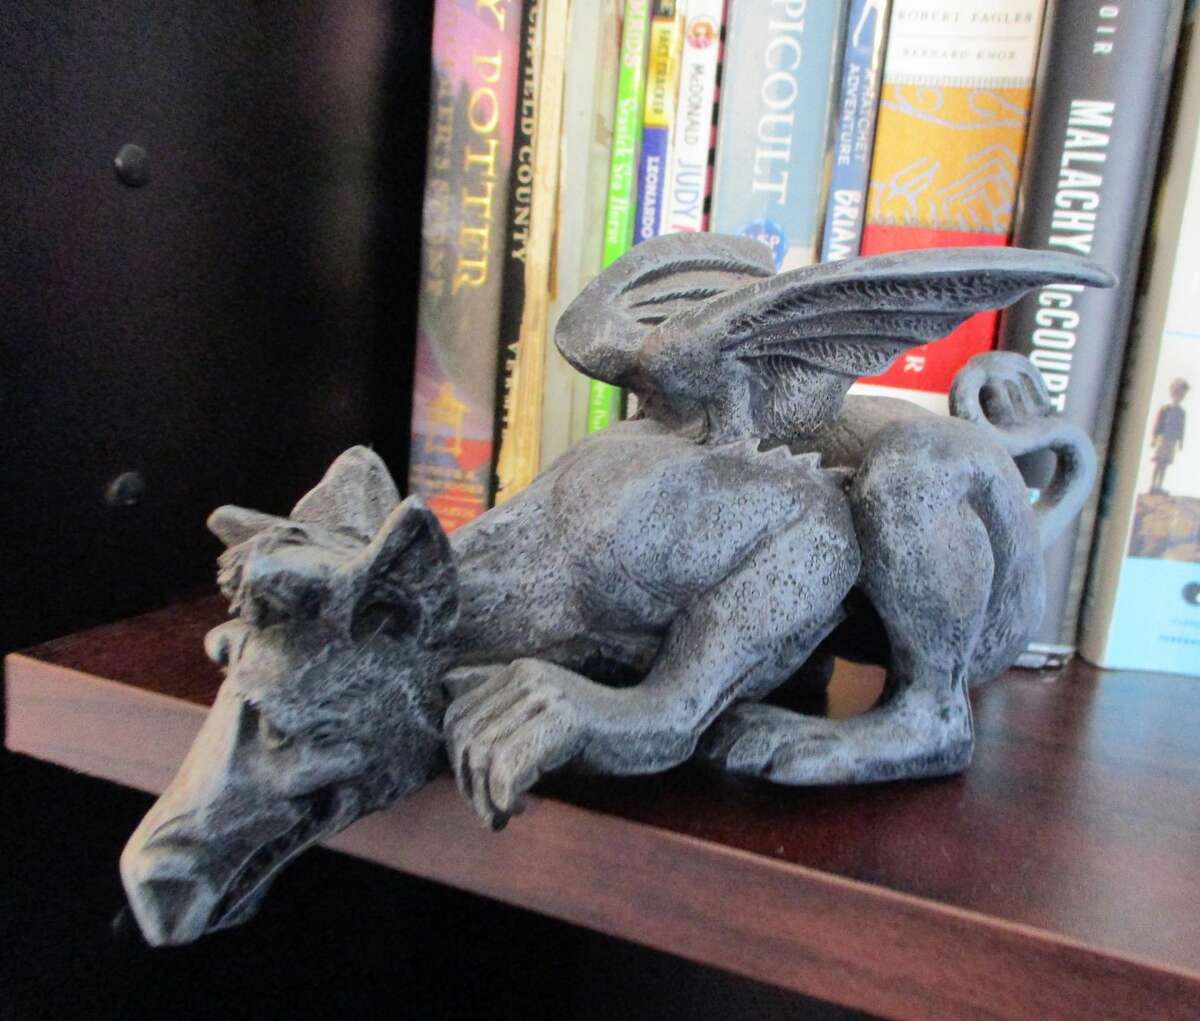 From its bookshelf perch, a gargoyle keeps watch.